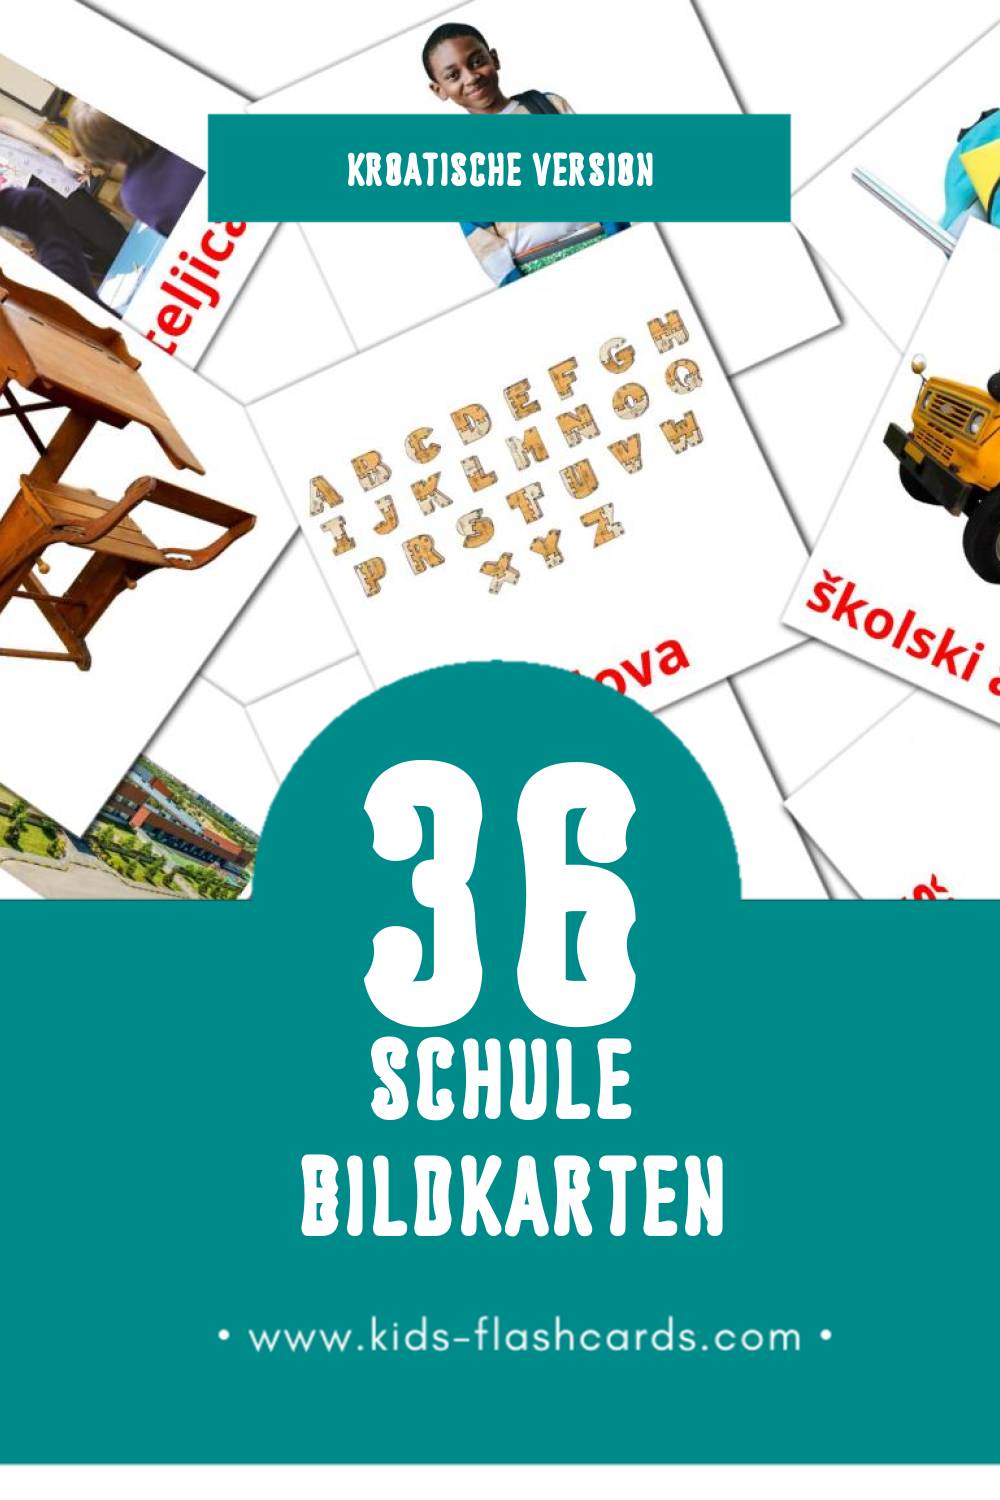 Visual škola Flashcards für Kleinkinder (36 Karten in Kroatisch)